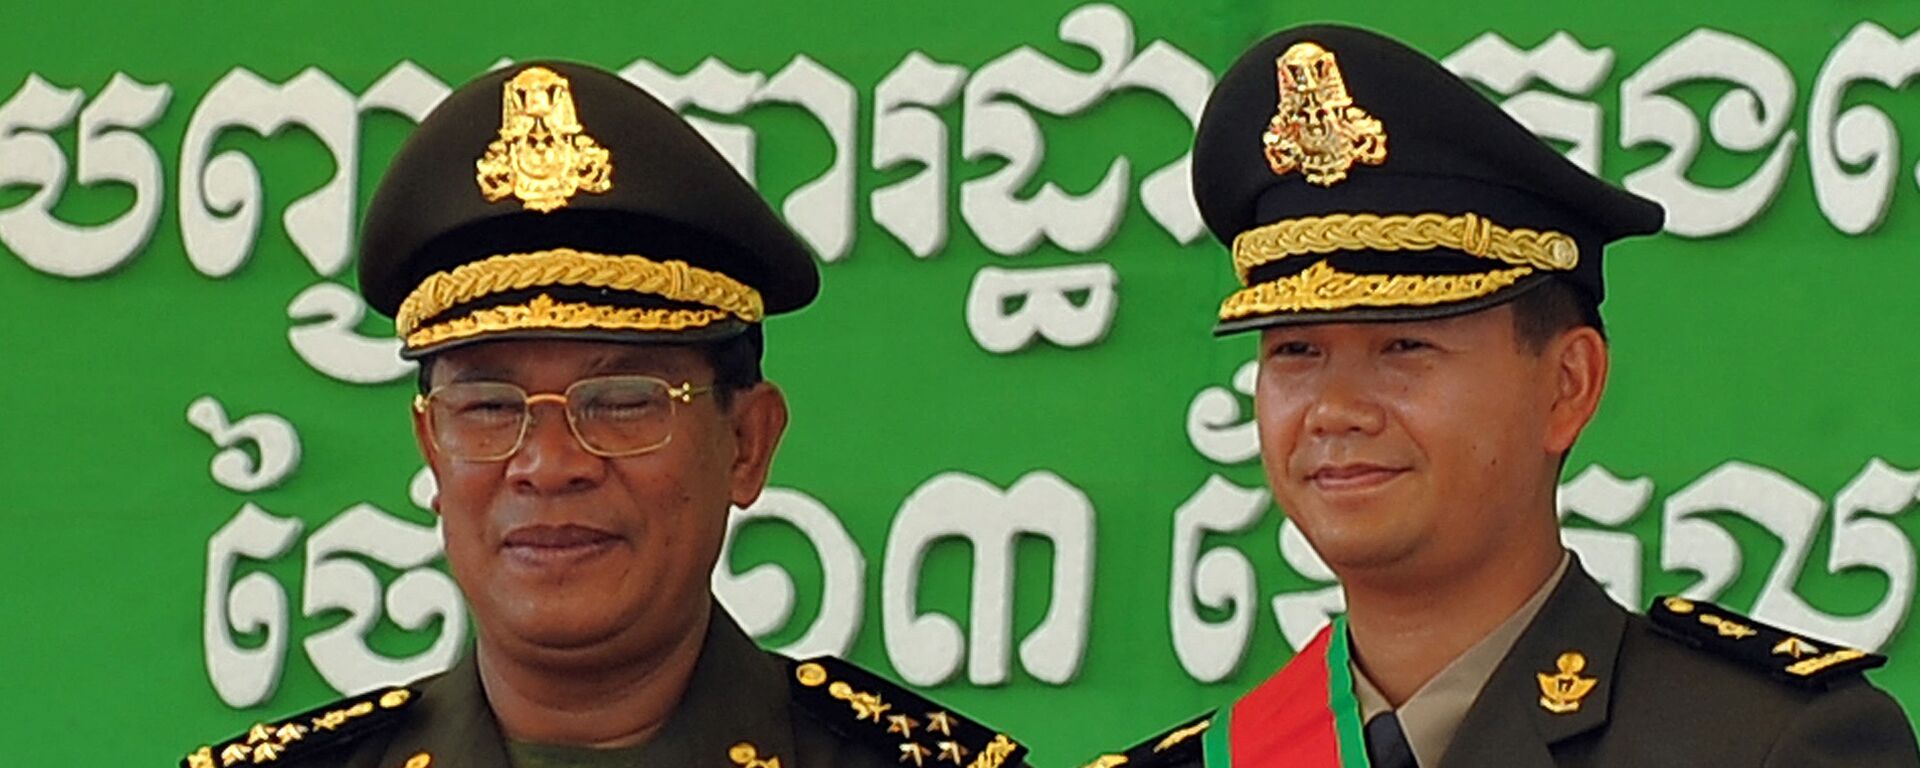 Thủ tướng Campuchia Hun Sen (trái) với con trai Hun Manet trong một buổi lễ diễn ra tại căn cứ quân sự ở Phnom Penh - Sputnik Việt Nam, 1920, 02.12.2021